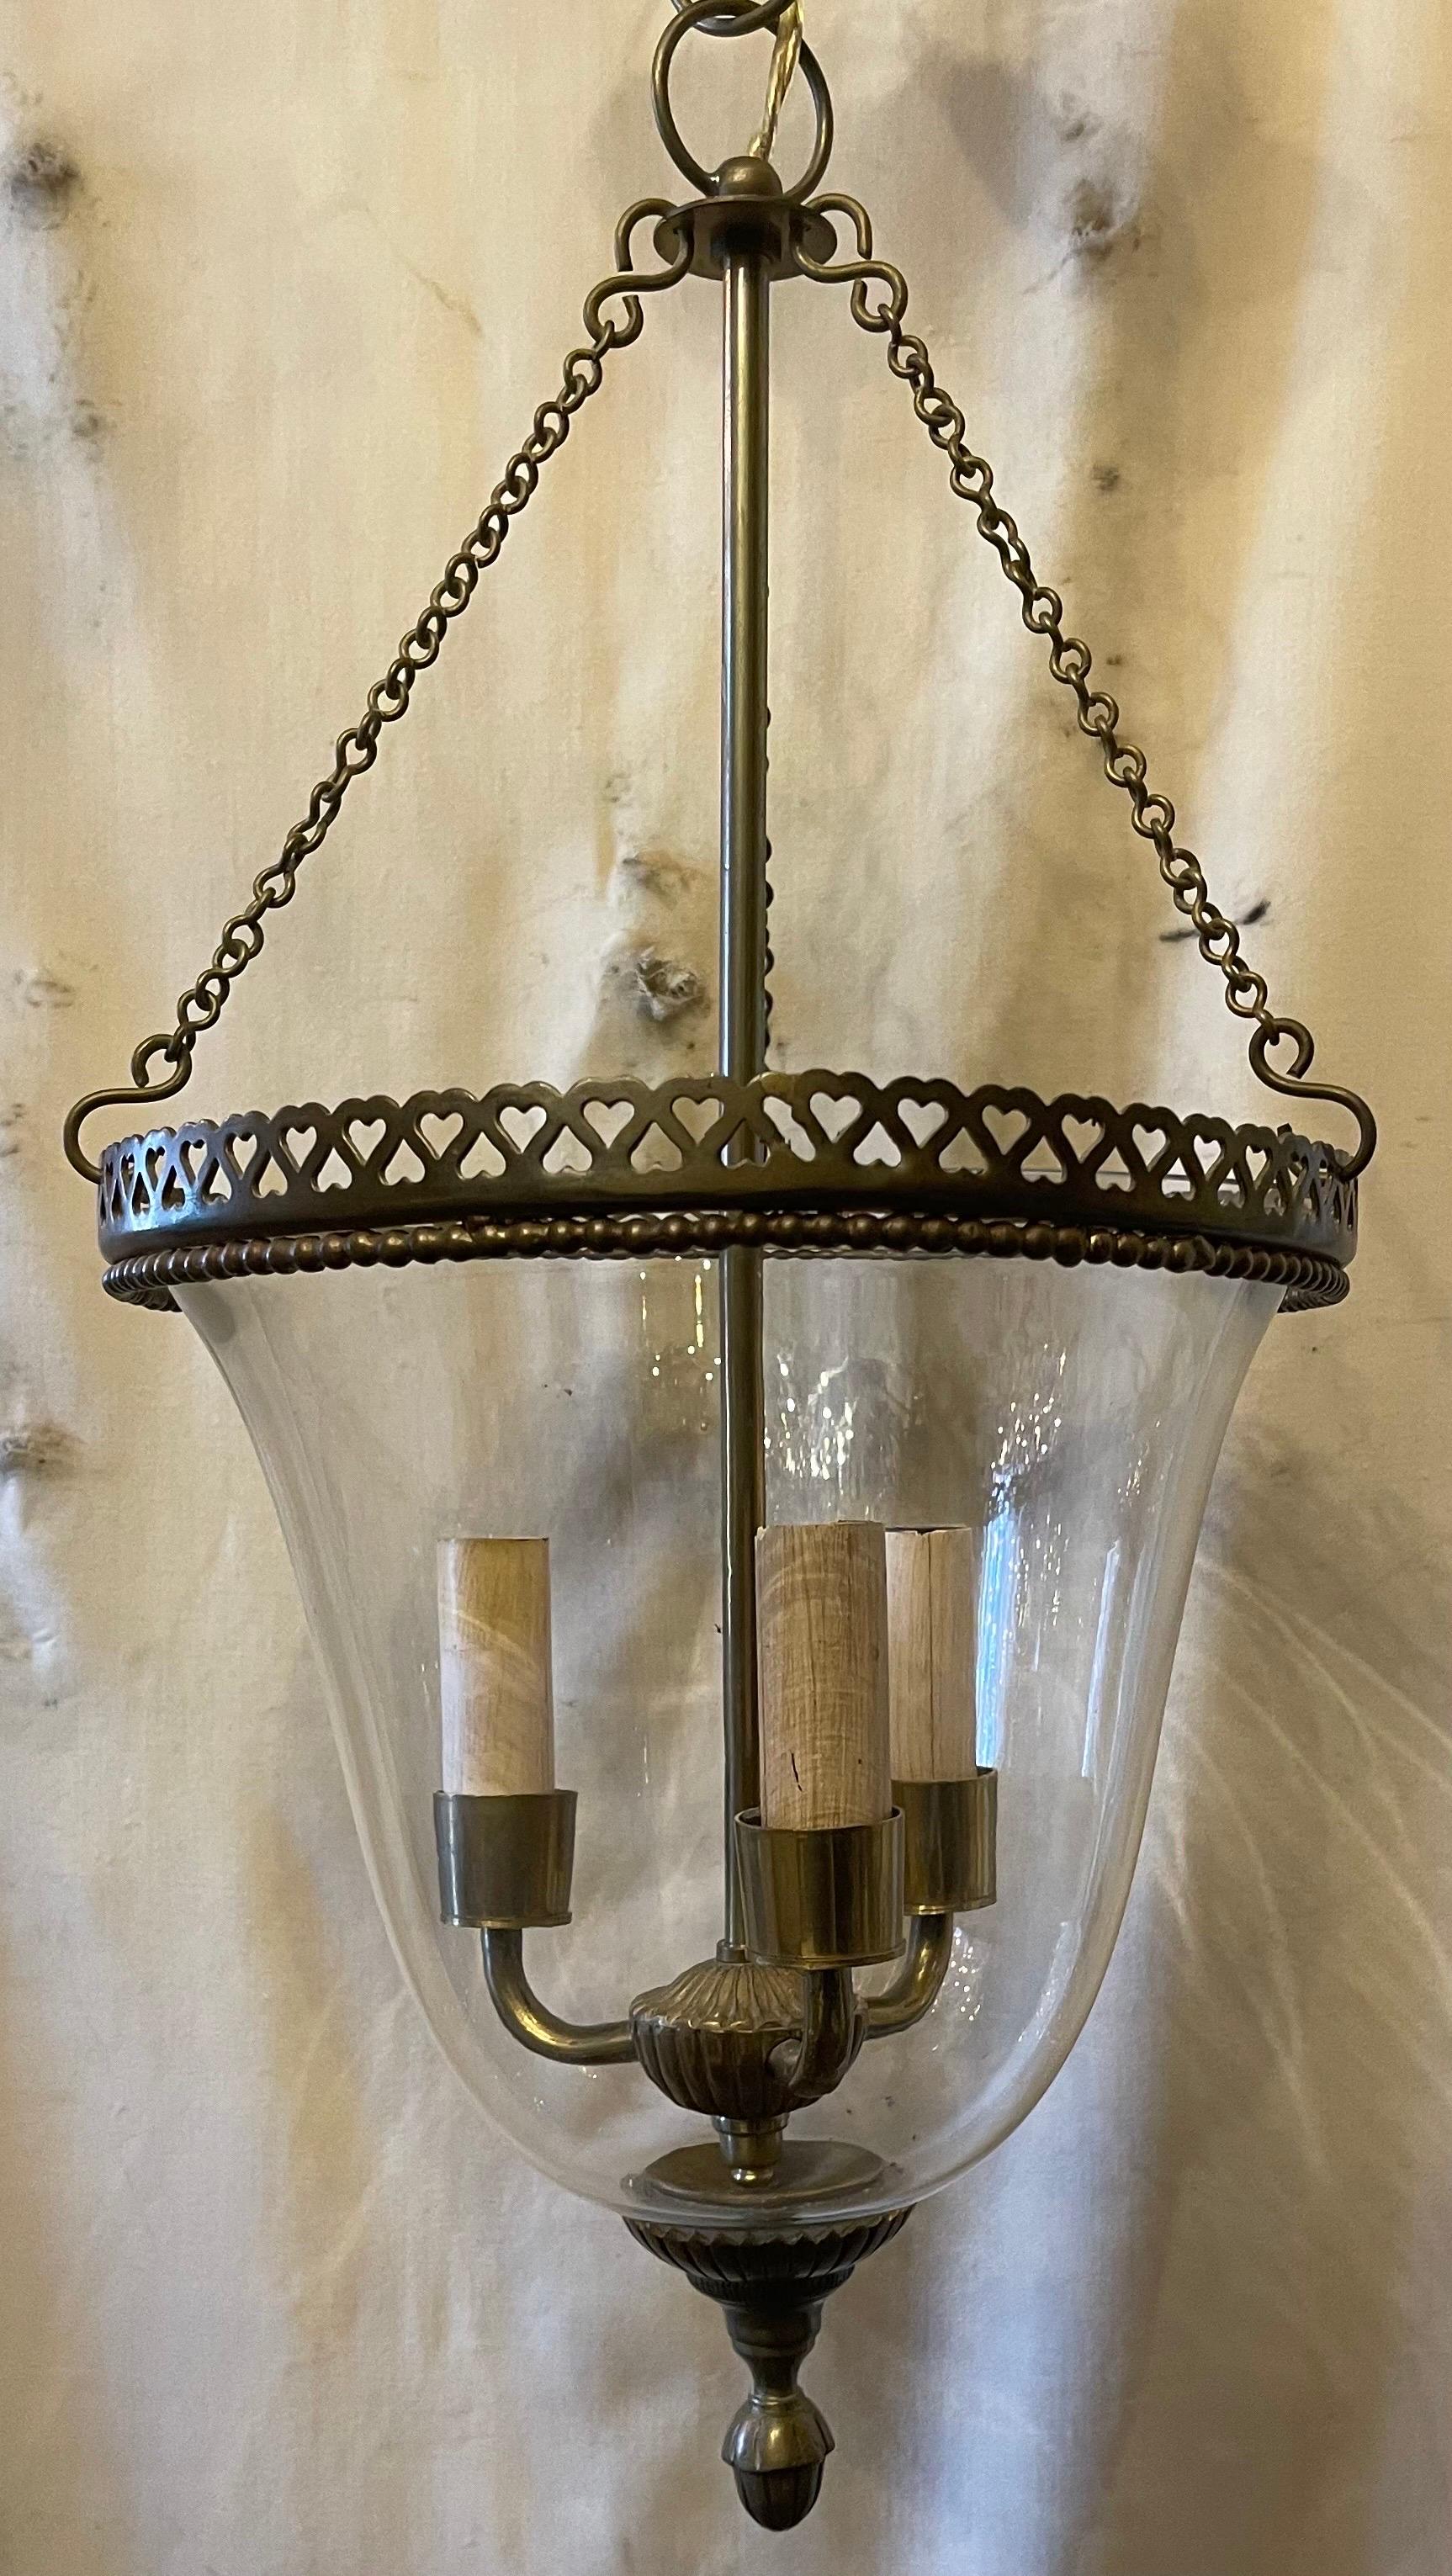 Magnifique lanterne de style néoclassique en verre à clochettes à cœur ouvert et percé de style Design-Light en bronze, accompagnée d'un baldaquin à chaîne et de matériel de montage.
Doté de 3 douilles candélabres.
 